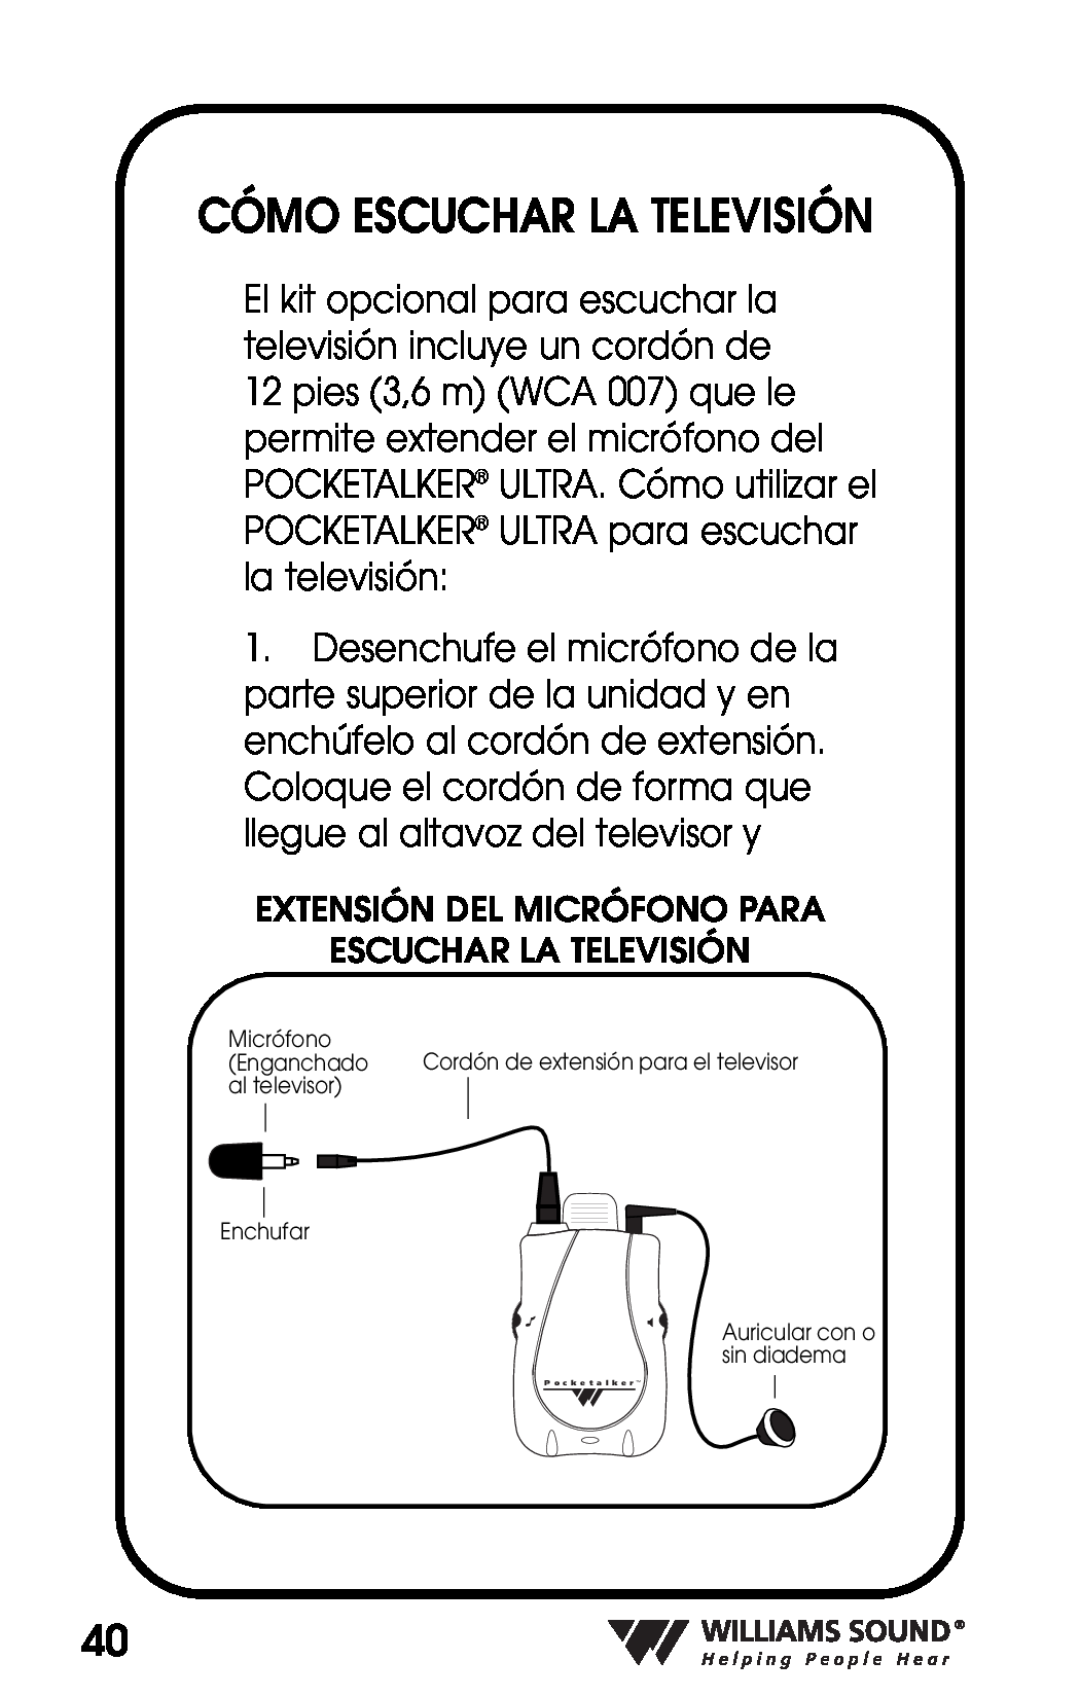 Williams Sound PKT D1 manual Cómo Escuchar La Televisión, Extensión Del Micrófono Para 